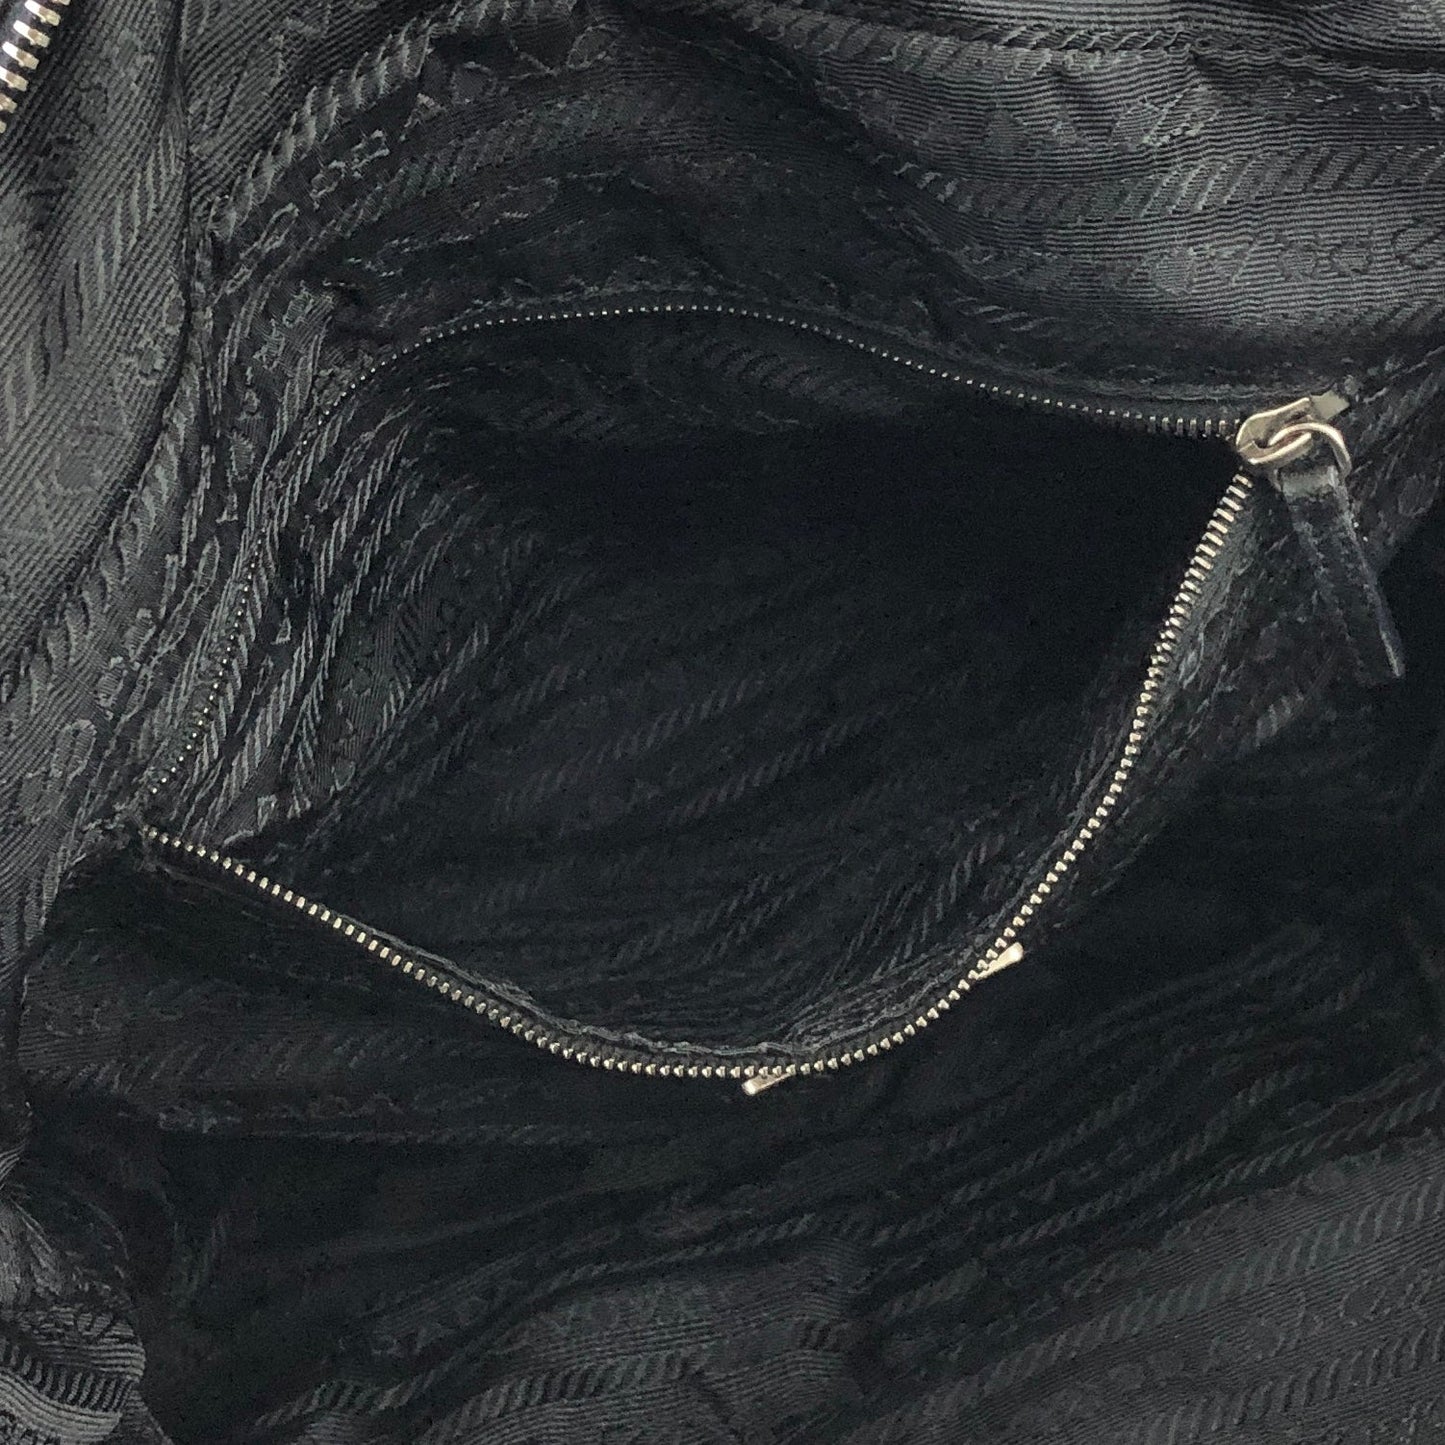 PRADA Triangle logo Nylon Double pocket Boston bag Handbag Black Vintage 5pyu3v